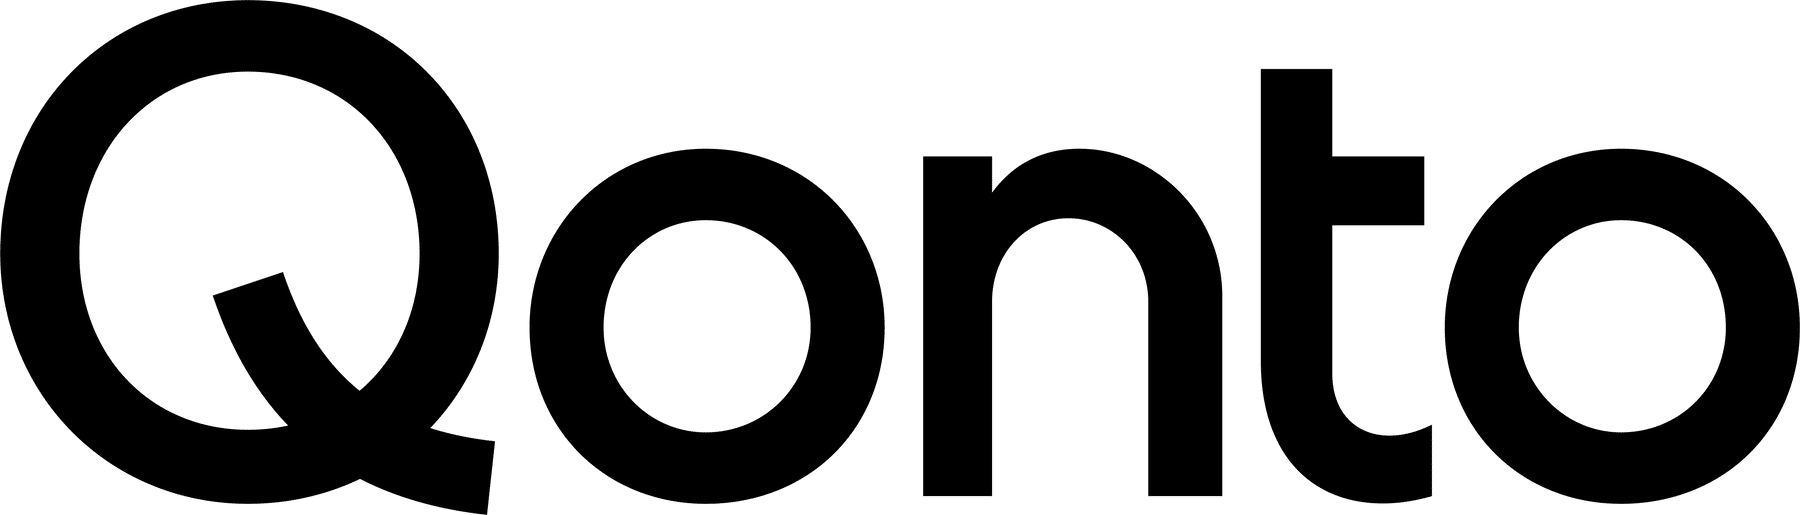 Qonto – accompagne les professionnels dans leur comptabilité